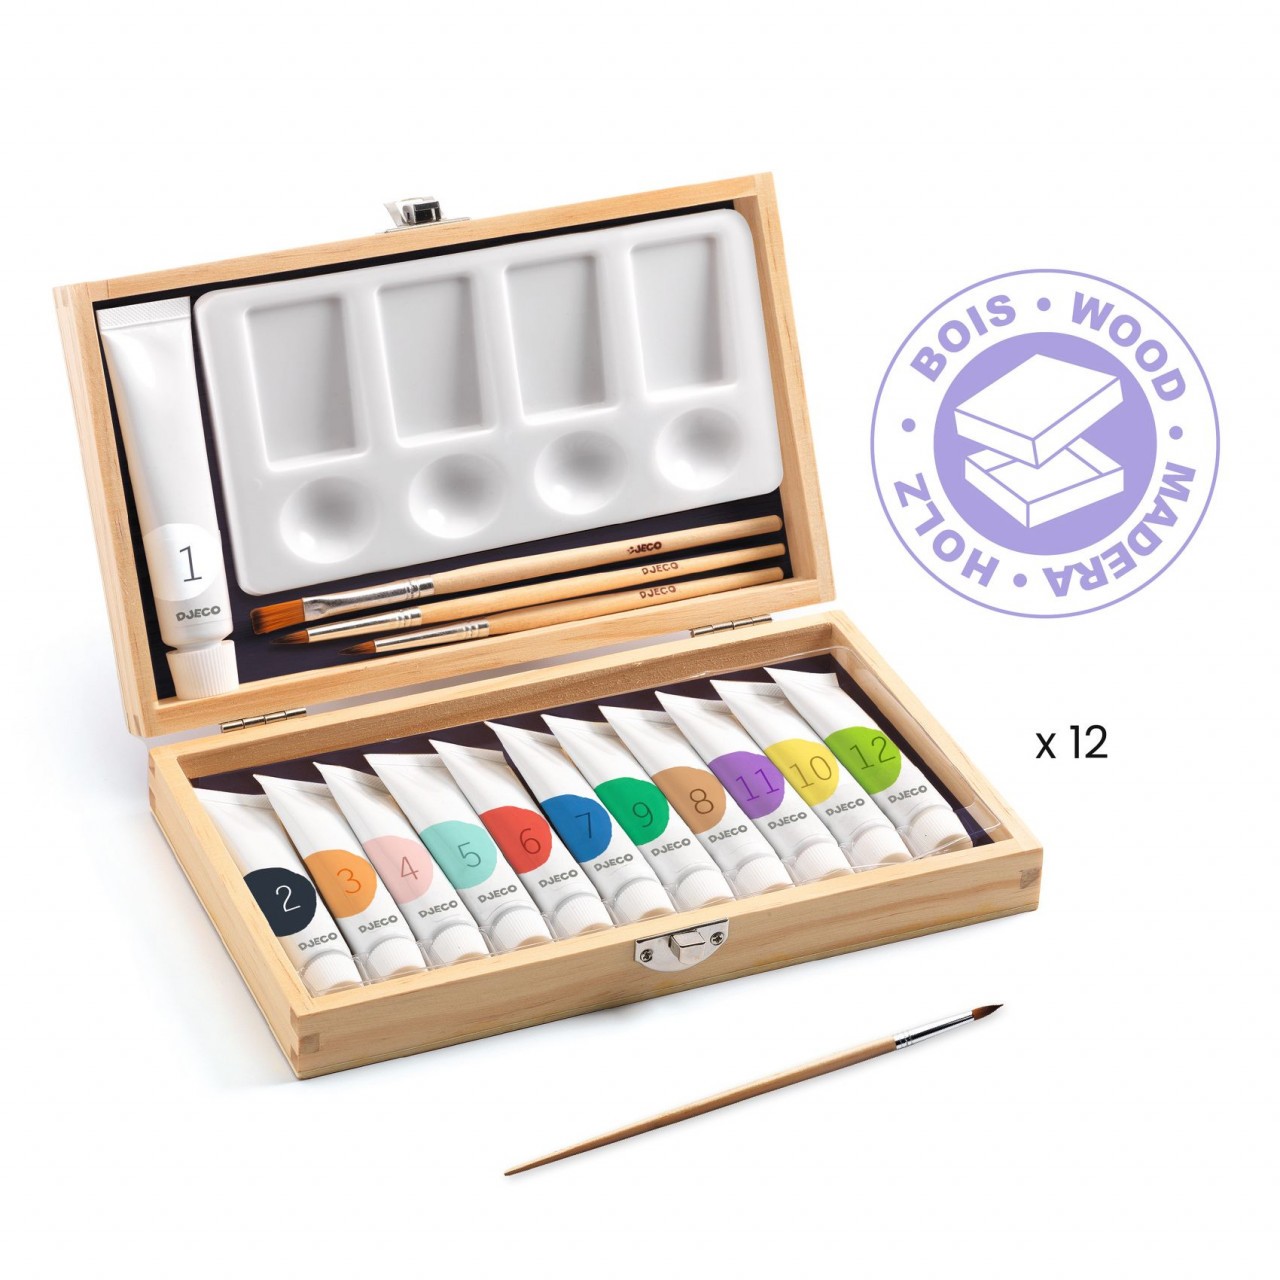 Cutia artistului cu 12 tuburi culori guase, Djeco